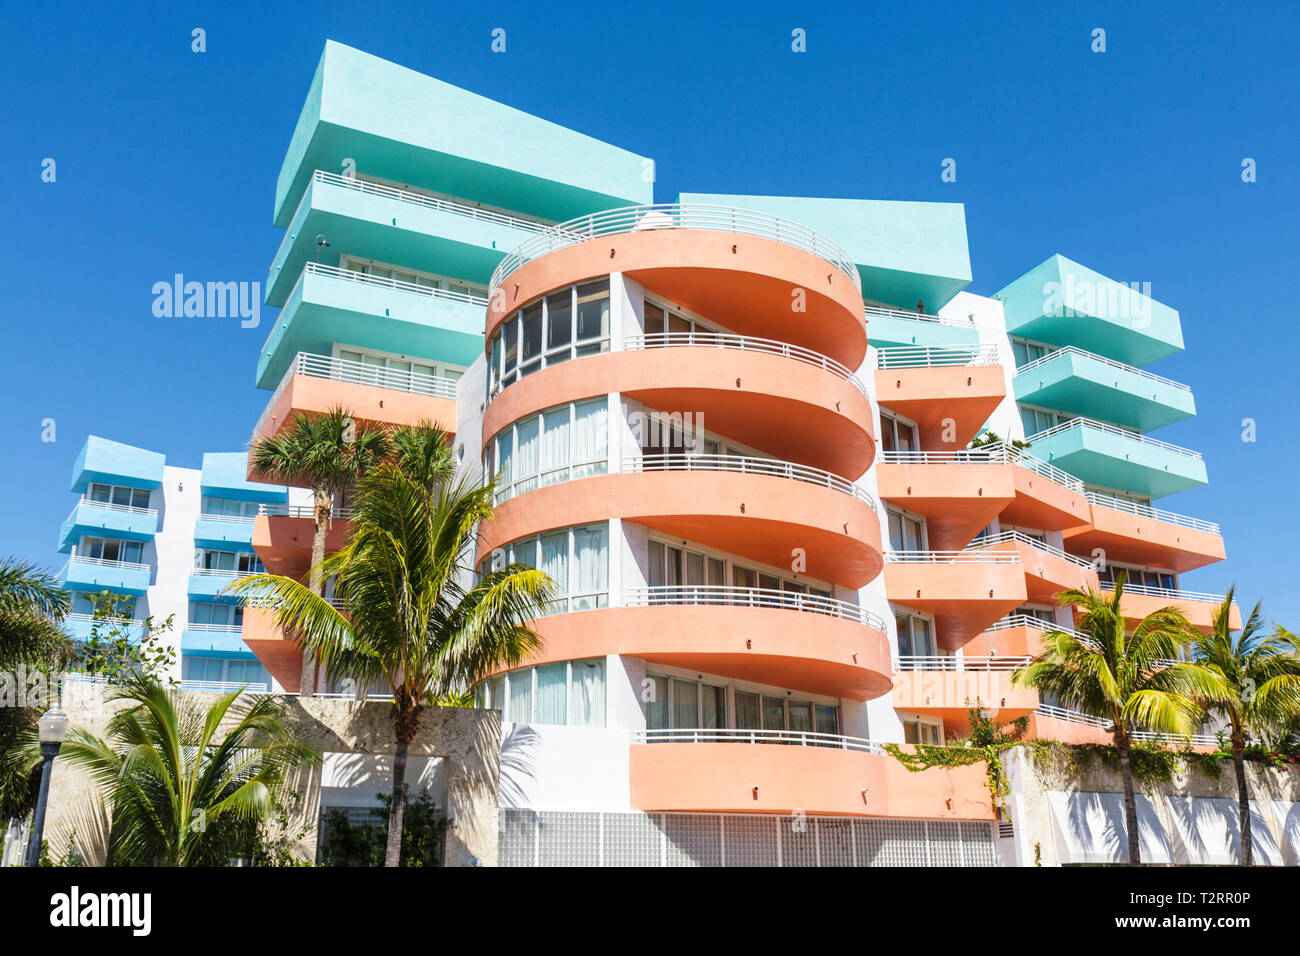 Miami Beach Florida,Ocean Drive,Ocean Place,peach,green,blue,balconies,condominium residential apartment apartments building buildings housing,high ri Stock Photo